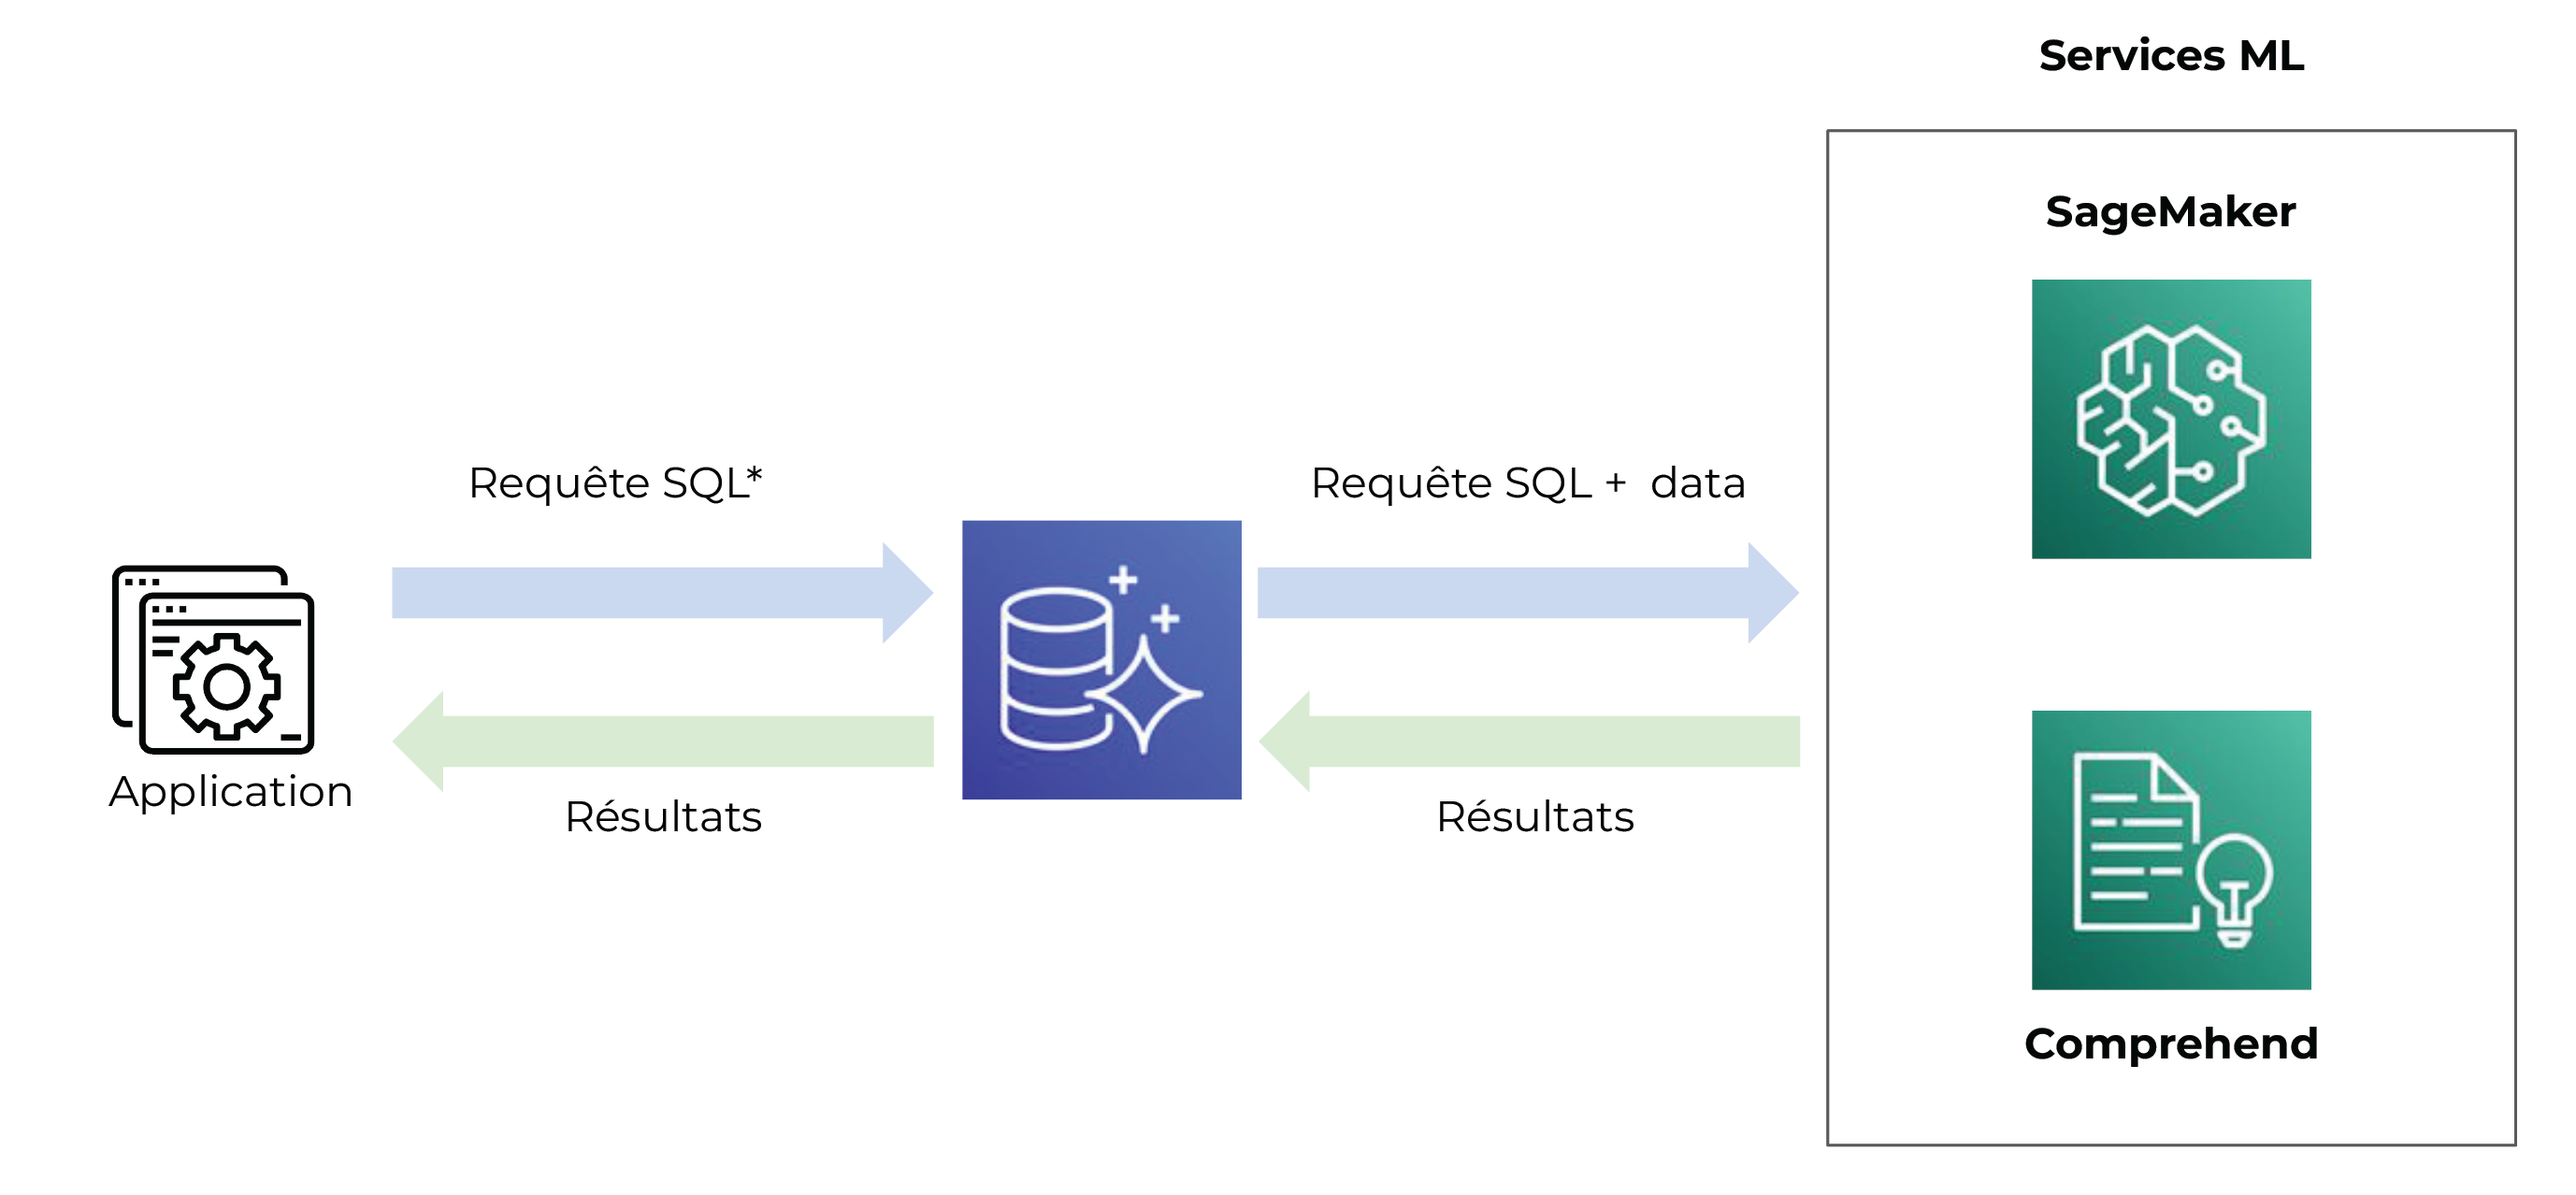 Un chemin avec 3 étapes : Application, Amazon Aurora et Services ML. Application fait une requête SQL, Amazon Aurora envoie une requête et le data vers Services ML qui lui renvoient les résultats. Amazon Aurora envoie les résultats vers l’applicati